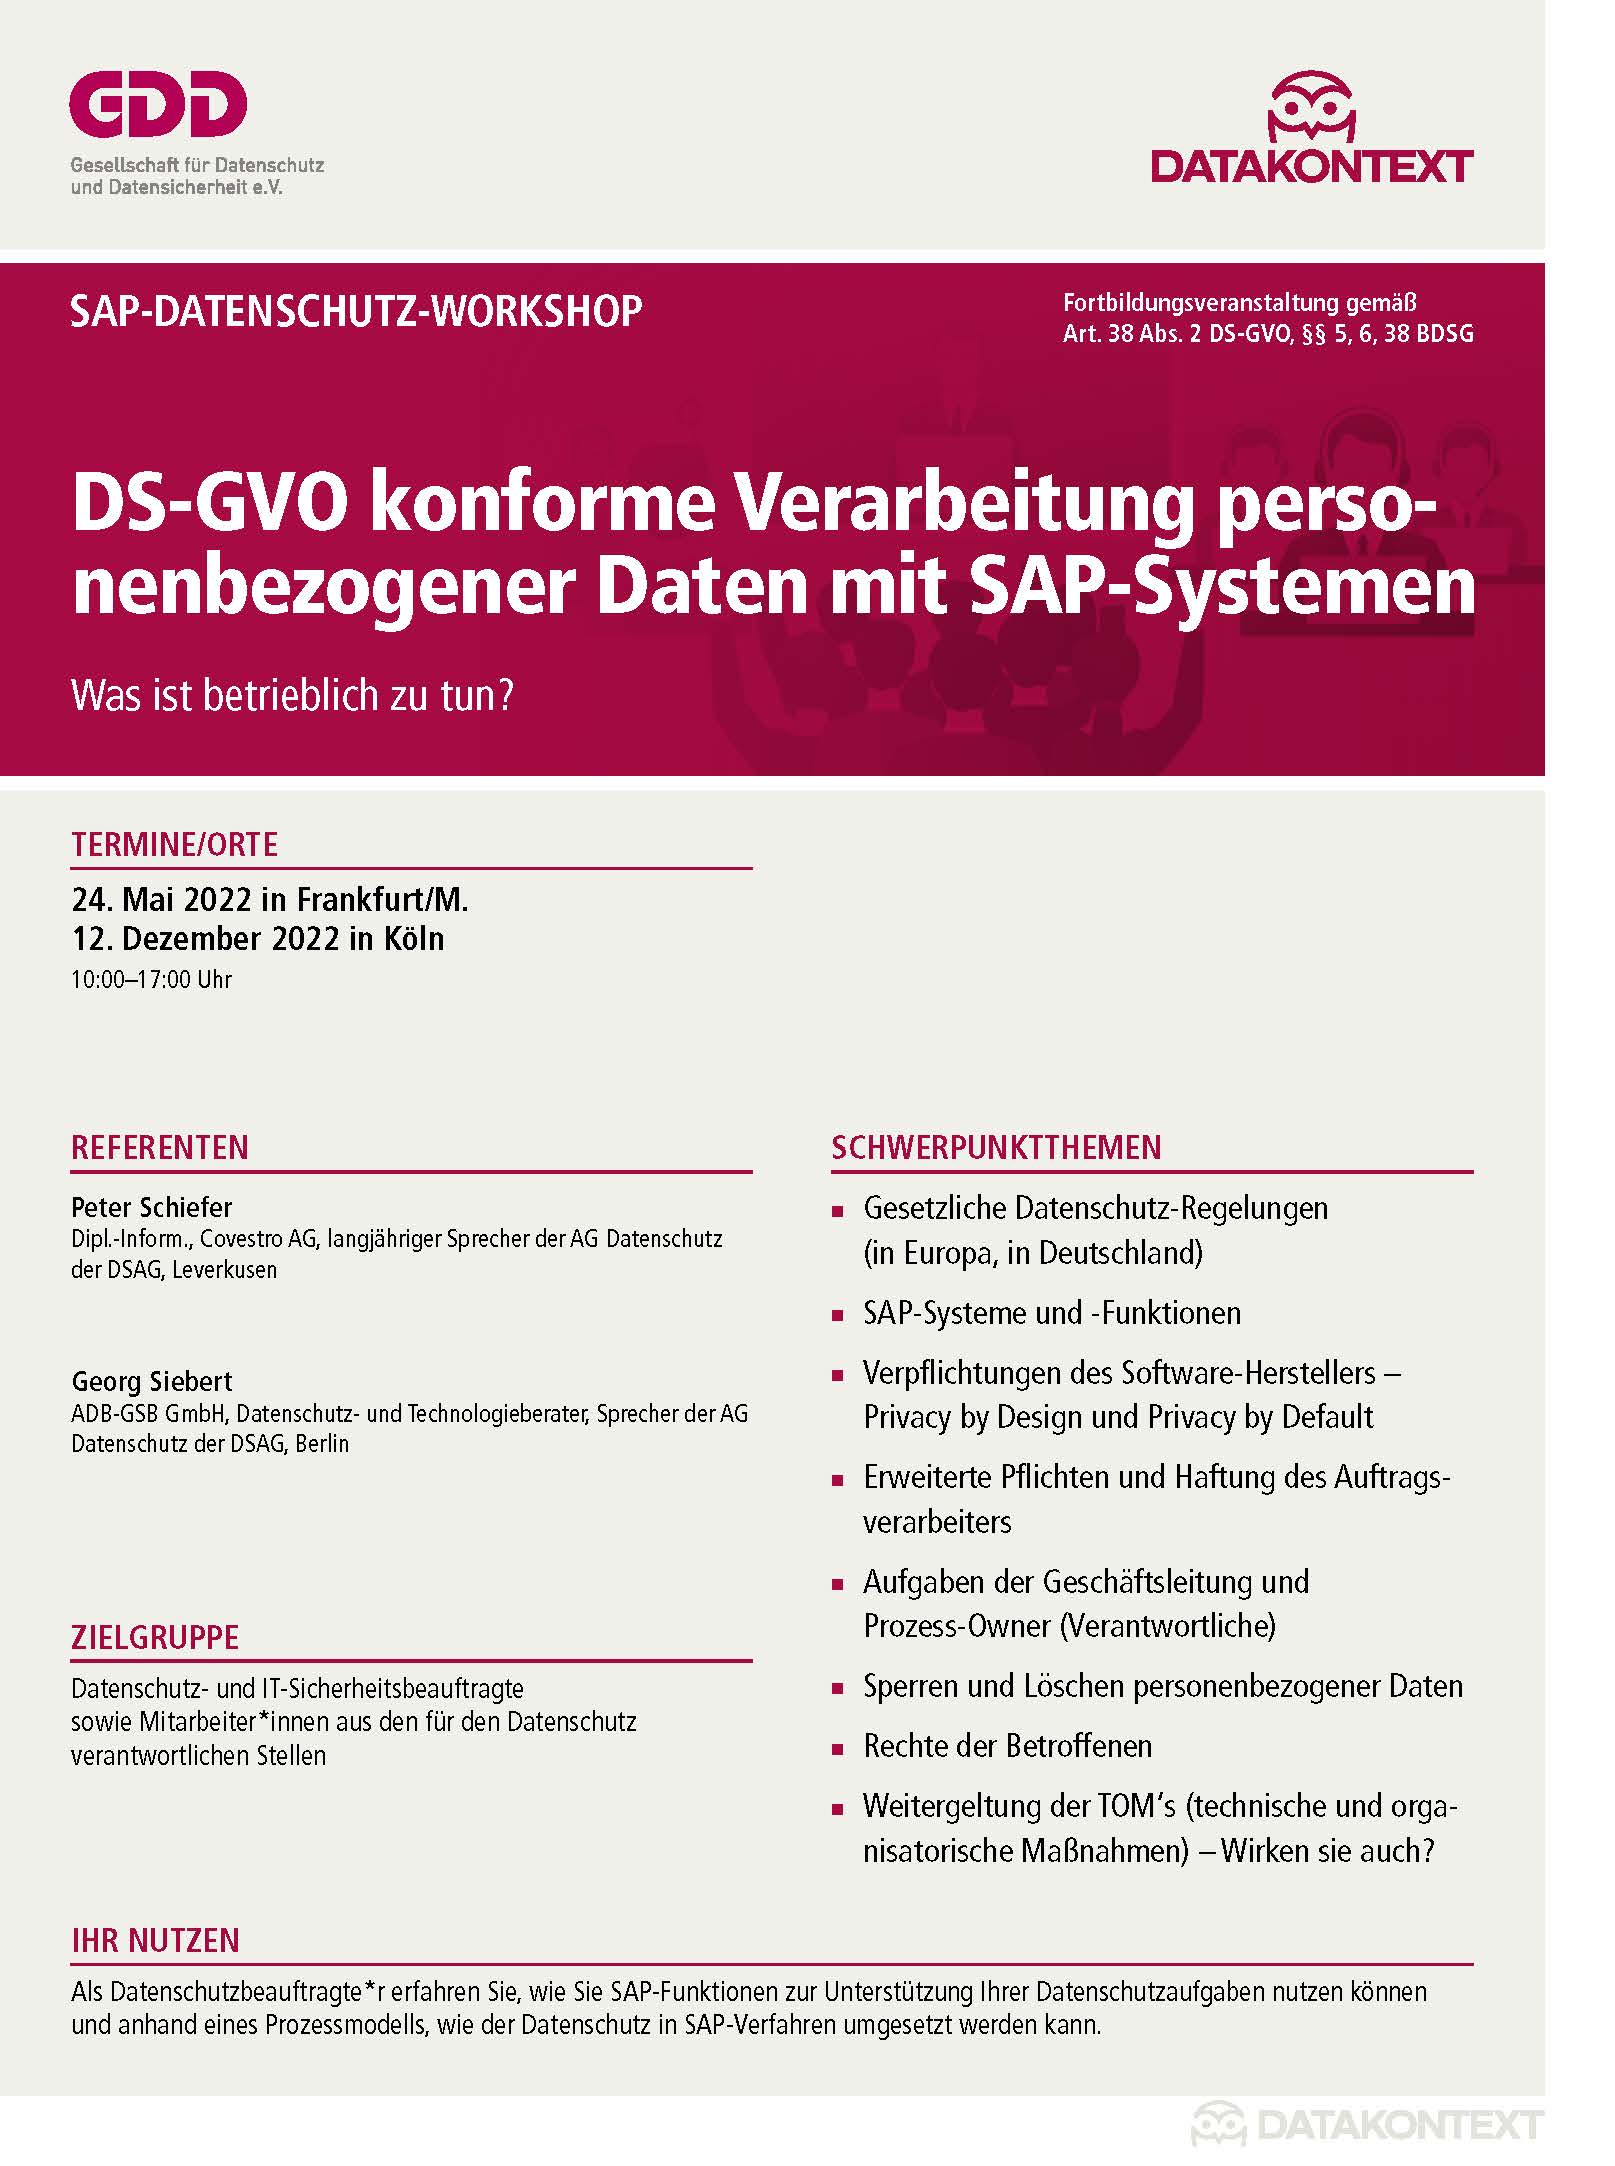 DS-GVO konforme Verarbeitung personenbezogener Daten mit SAP-Systemen